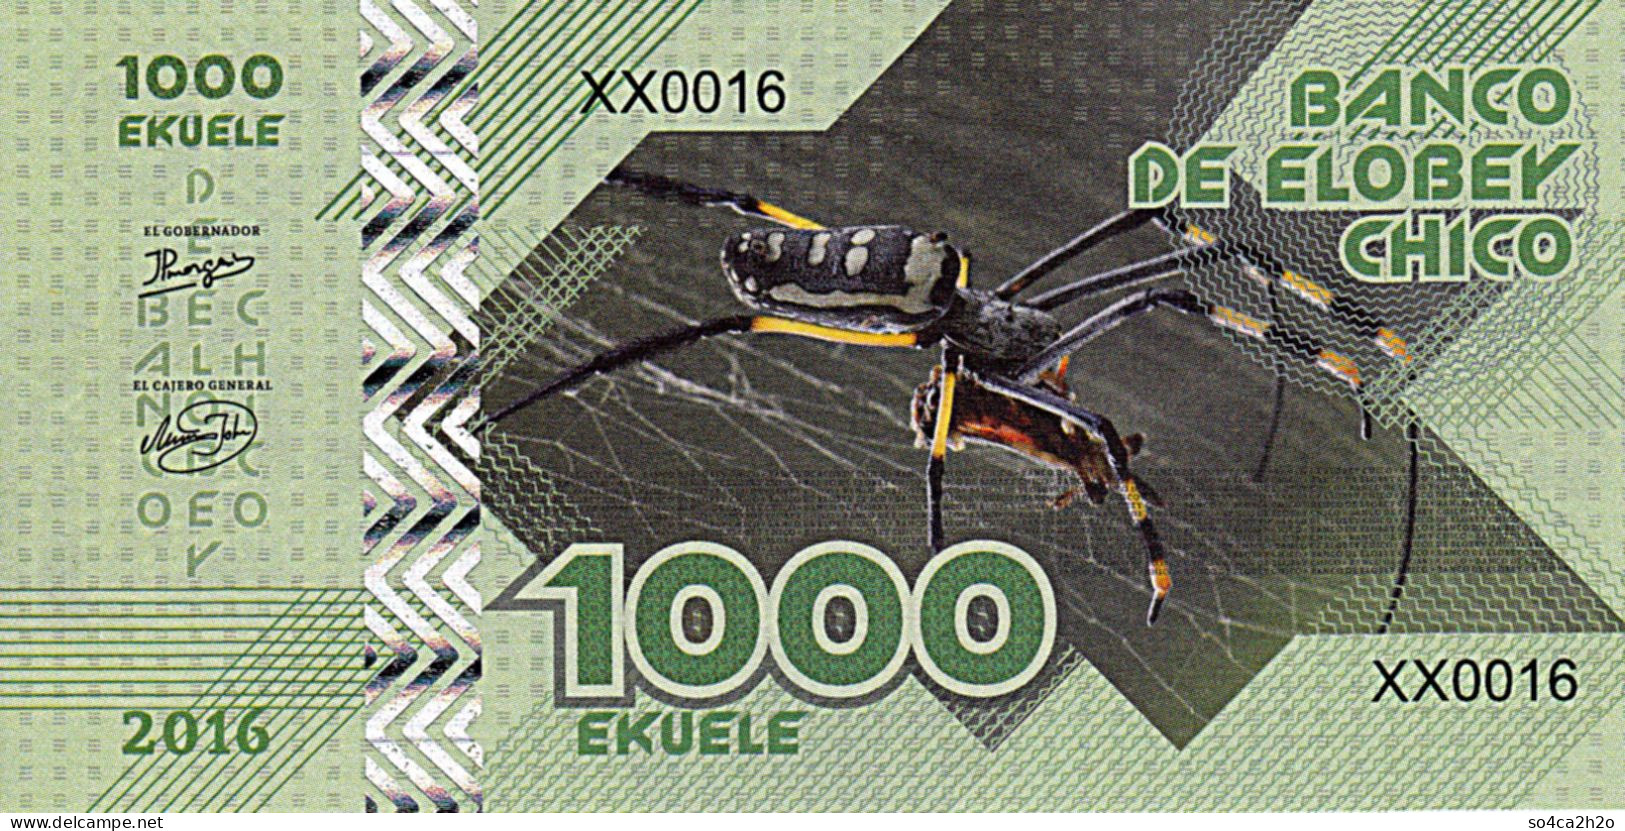 Elobey Chico 1000 EKUELE 2016 SPIDER Tarantula  UNC - Ficción & Especímenes